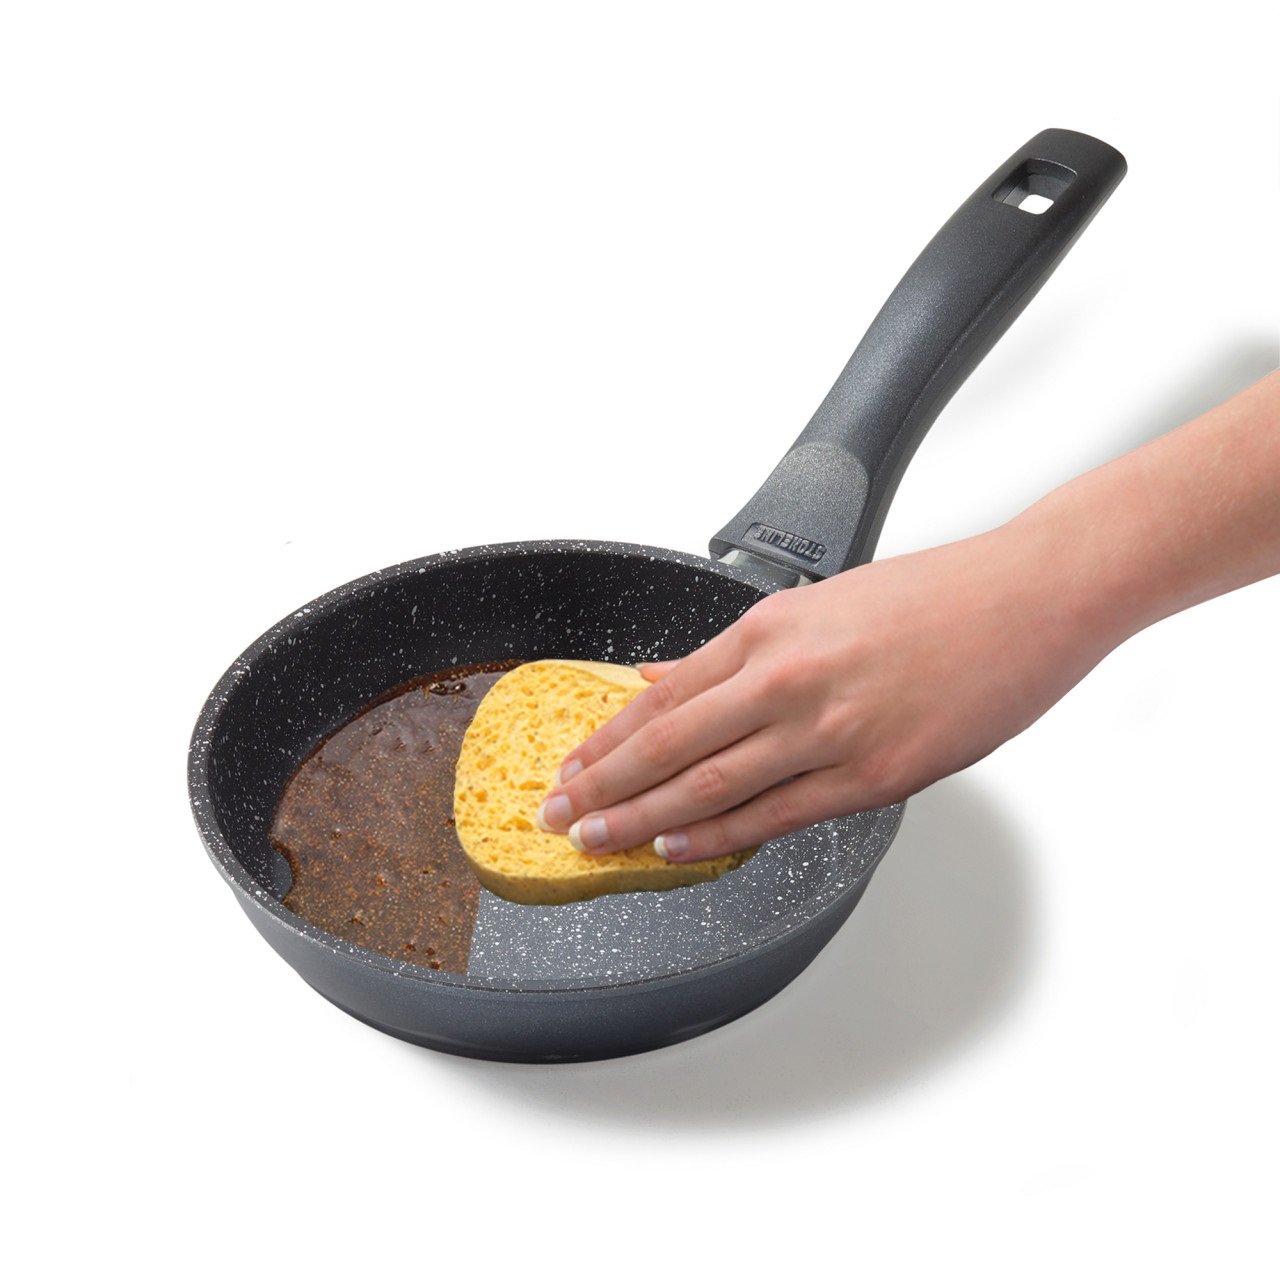 Padella STONELINE® da 16 cm, padella per omelette antiaderente, adatta al forno e all'induzione